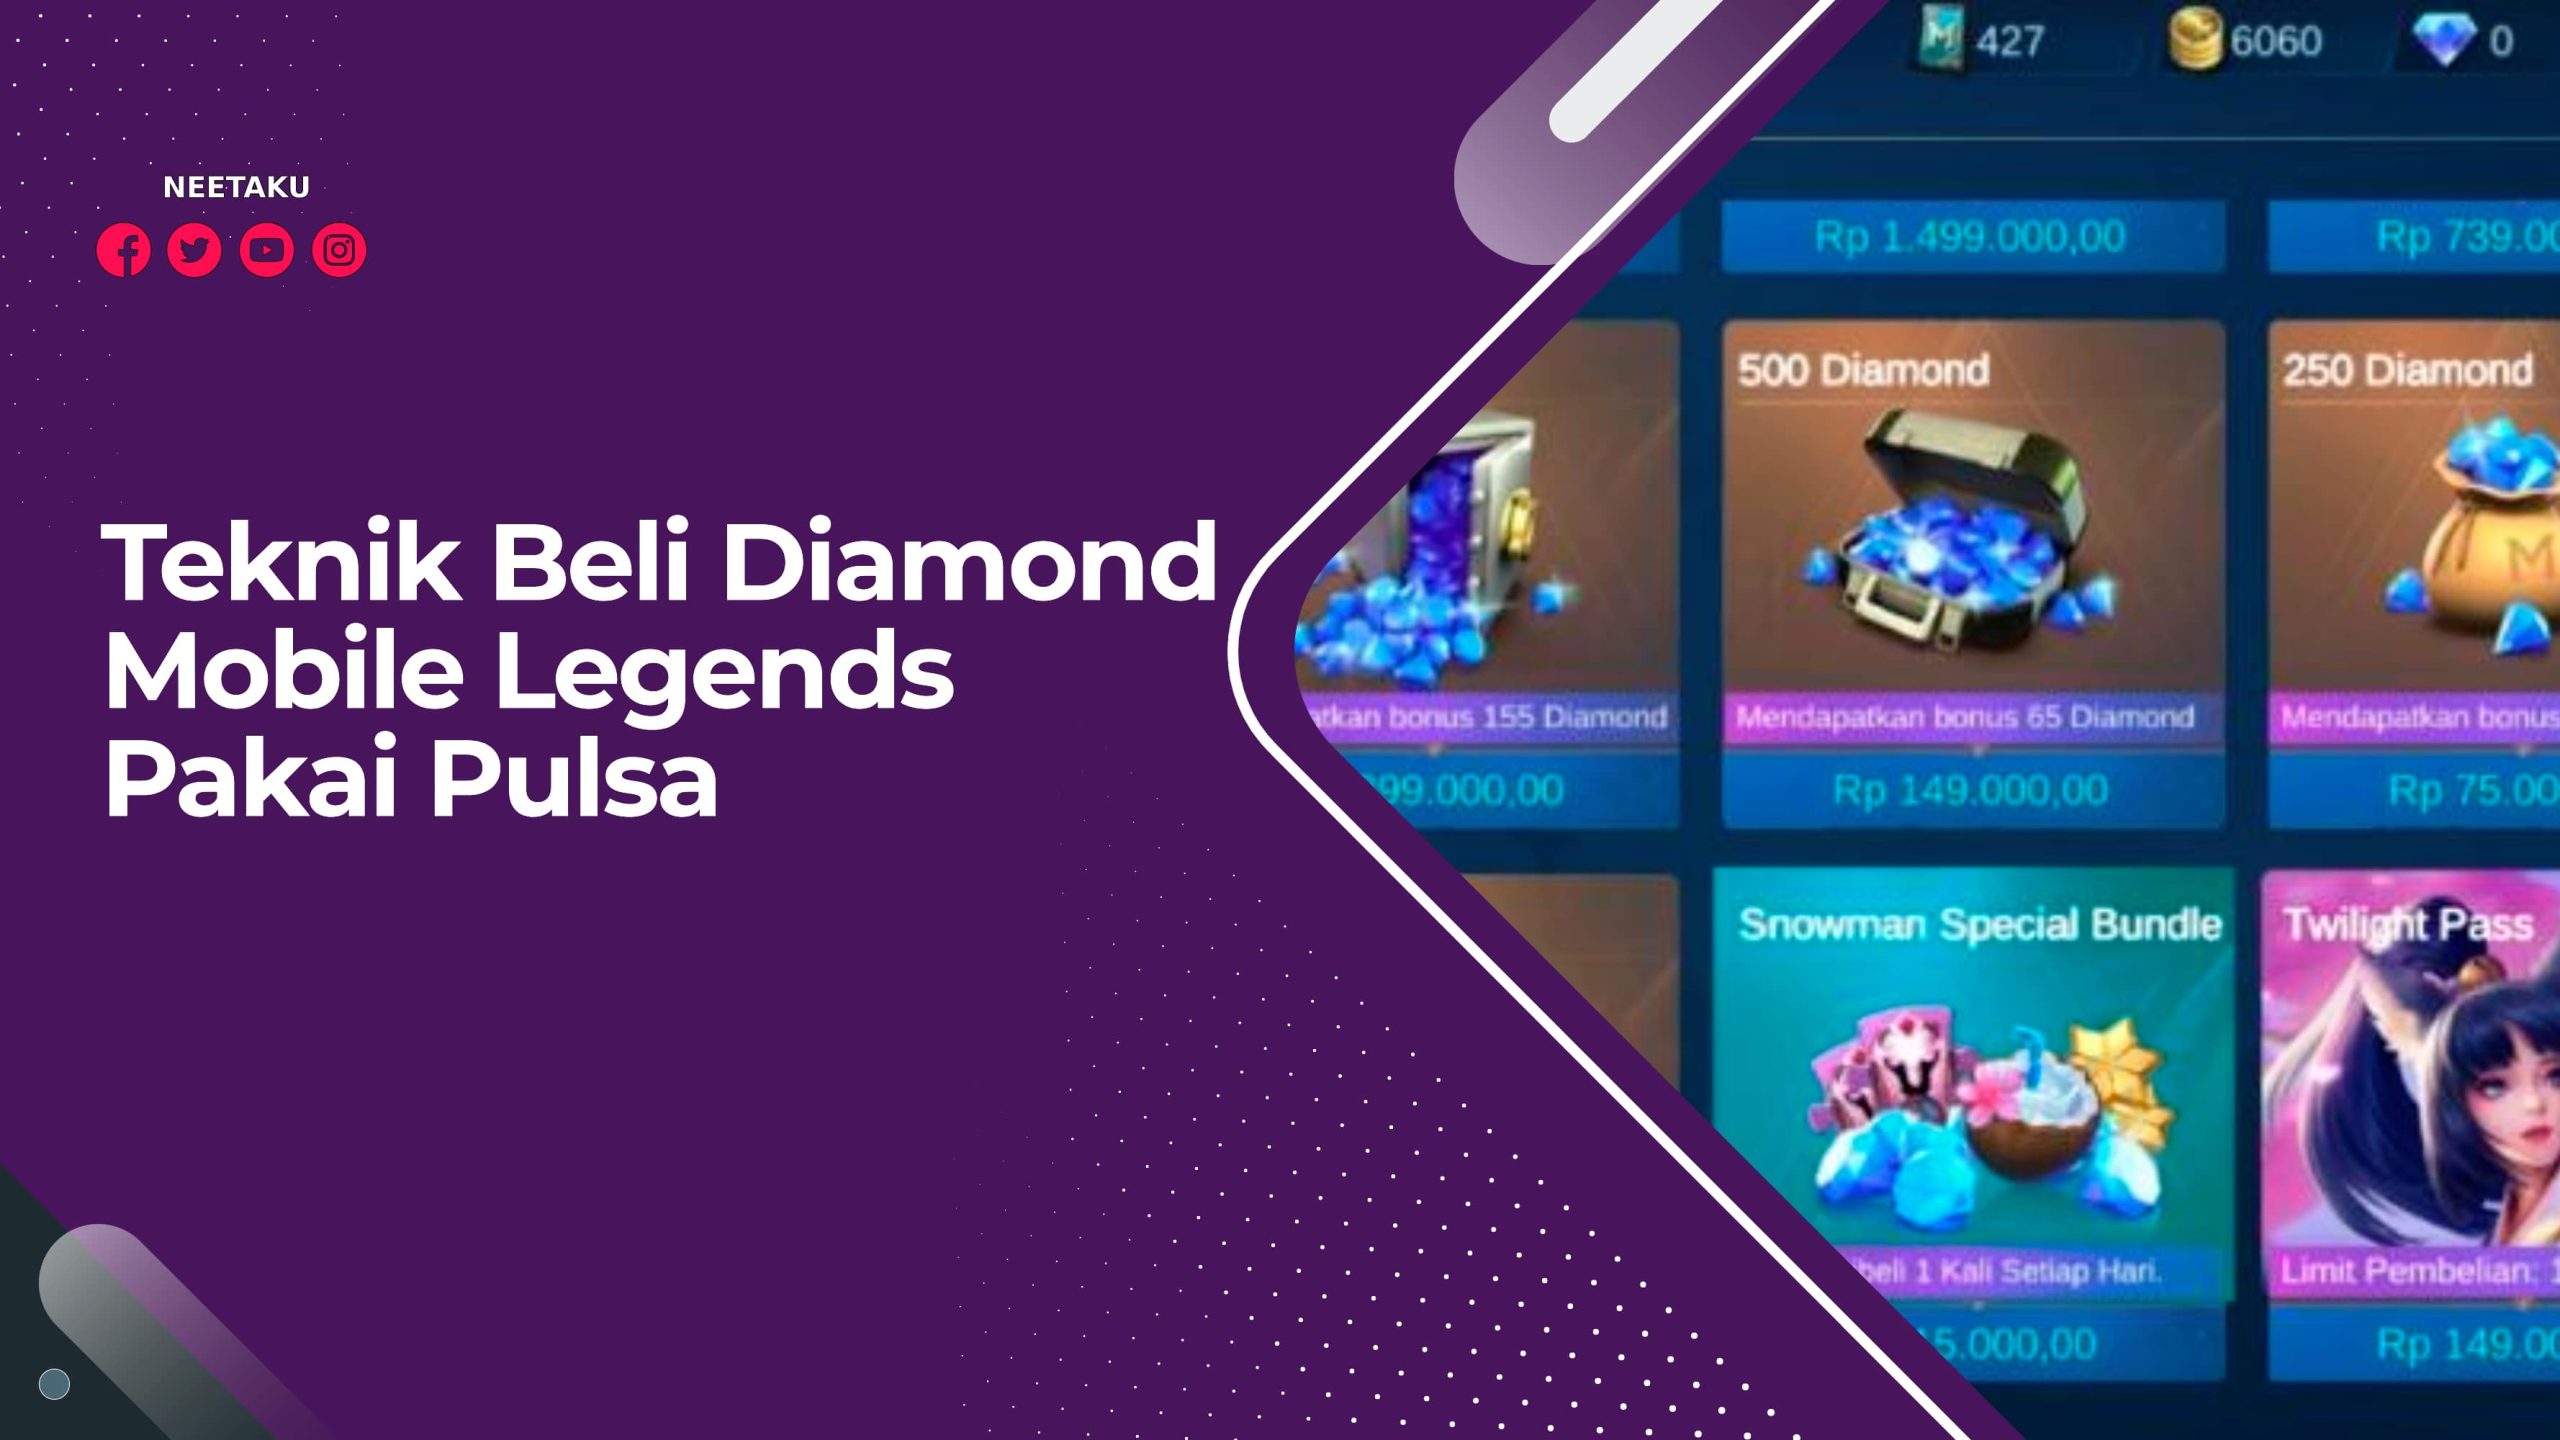 Teknik Beli Diamond Mobile Legends Pakai Pulsa